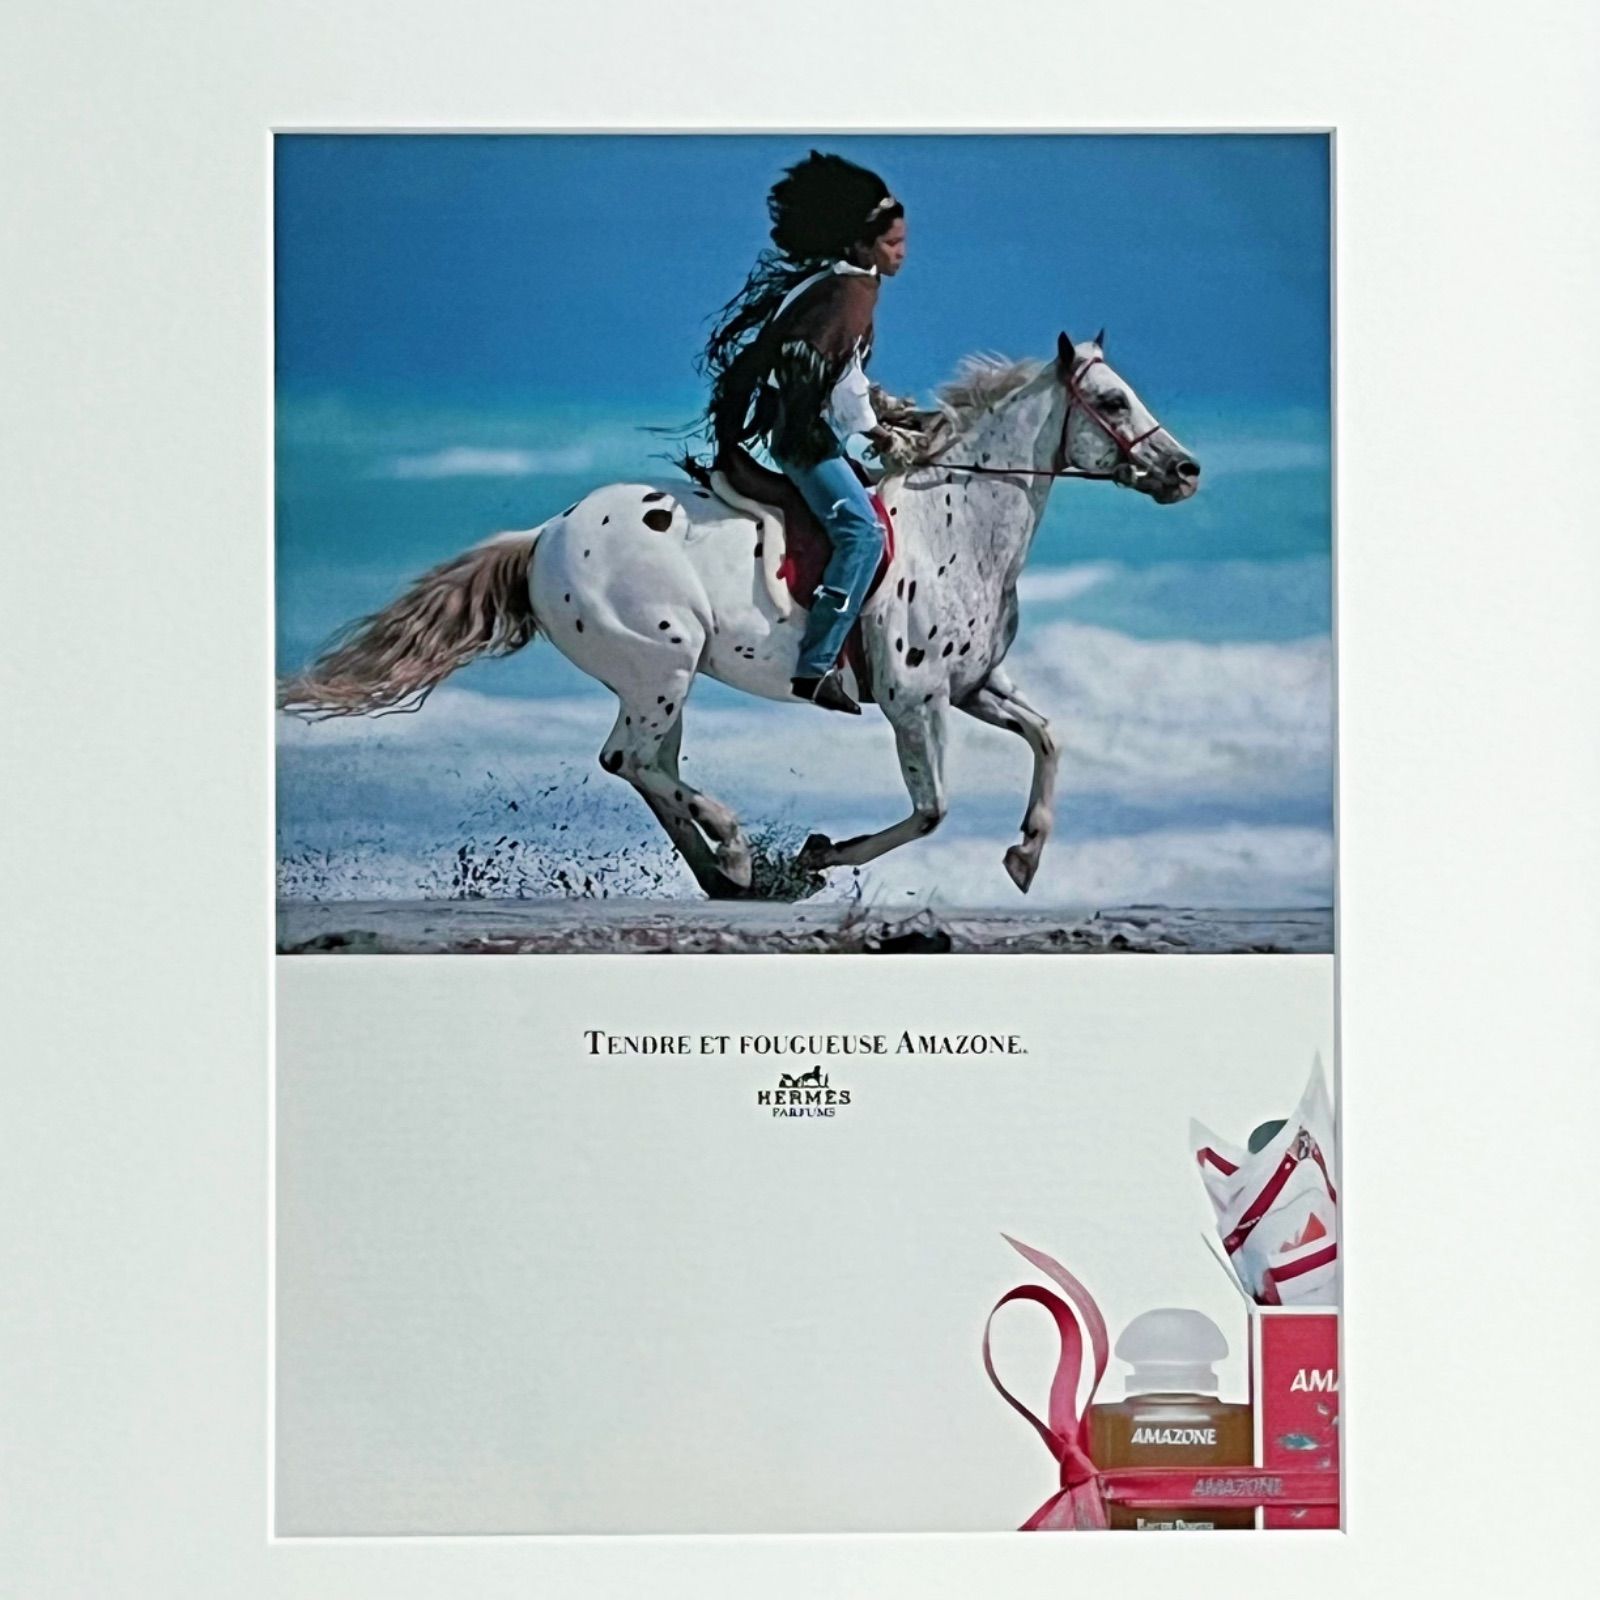 1989 広告＞Hermès エルメス アマゾン アドバタイジング ポスター